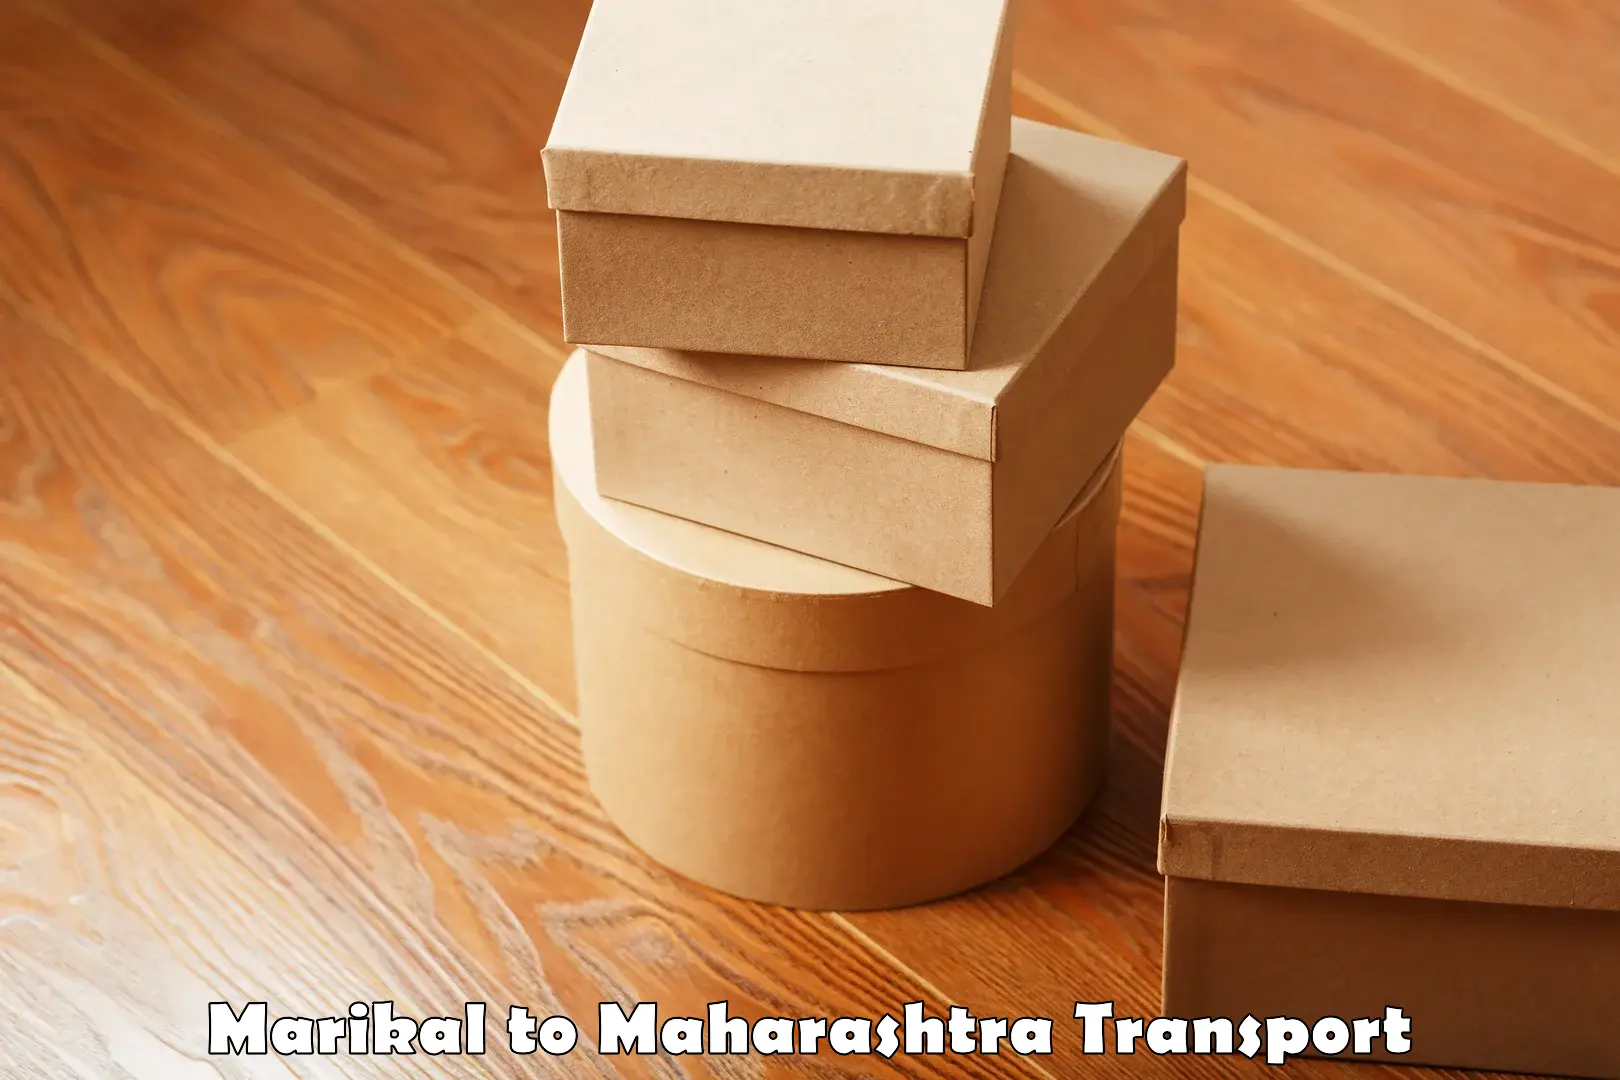 Commercial transport service Marikal to Maharashtra